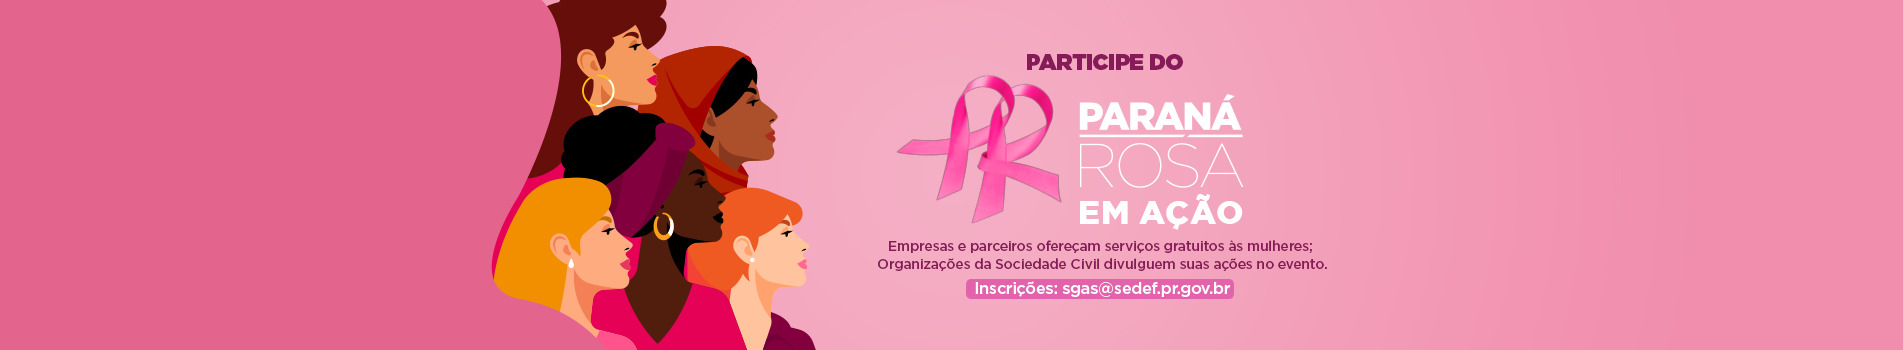 Participe do Paraná Rosa em ação. Empresas e parceiros ofereçam serviços gratuito às mulheres. Organizações da Sociedade Civil divulguem suas ações no evento. Inscrições pelo E-mail: sgas@sedef.pr.gov.br: 